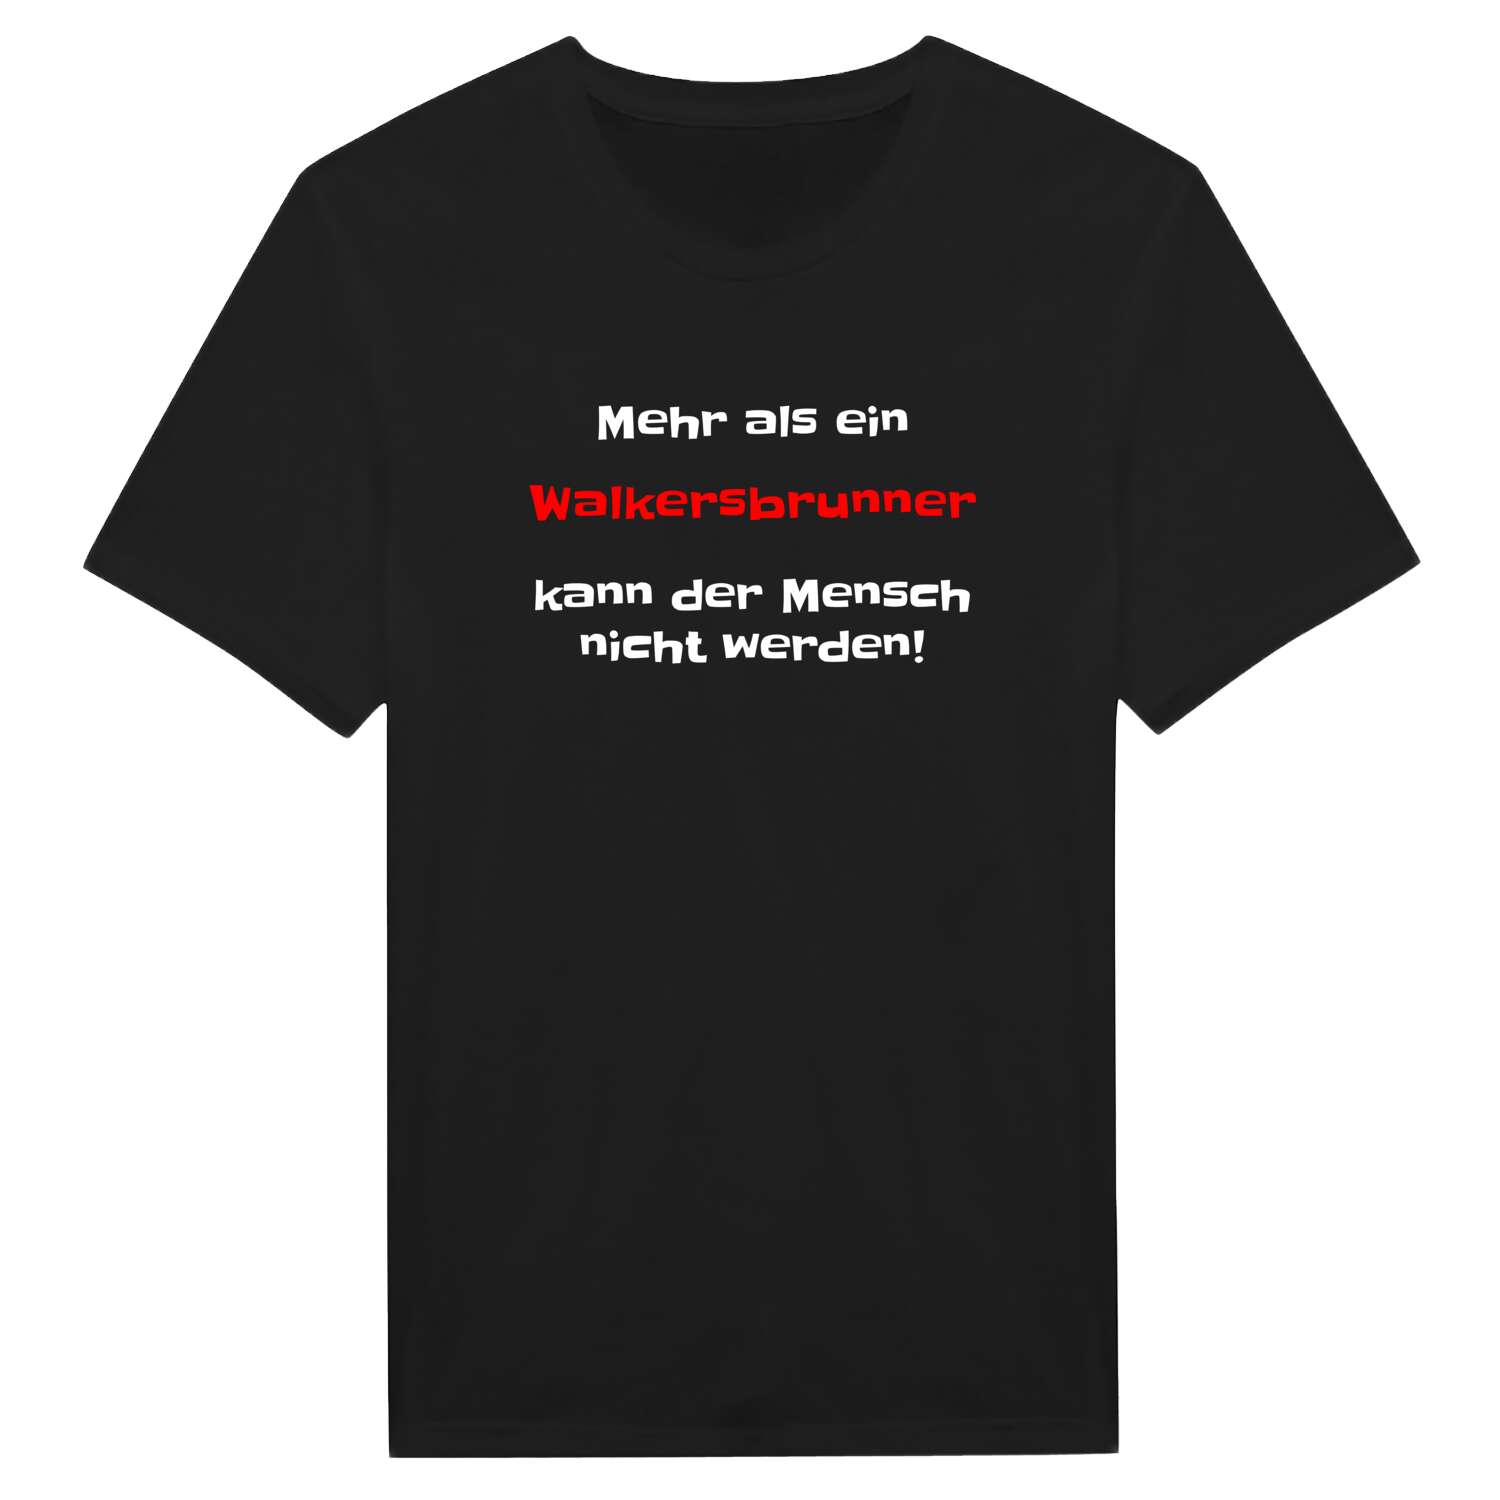 Walkersbrunn T-Shirt »Mehr als ein«